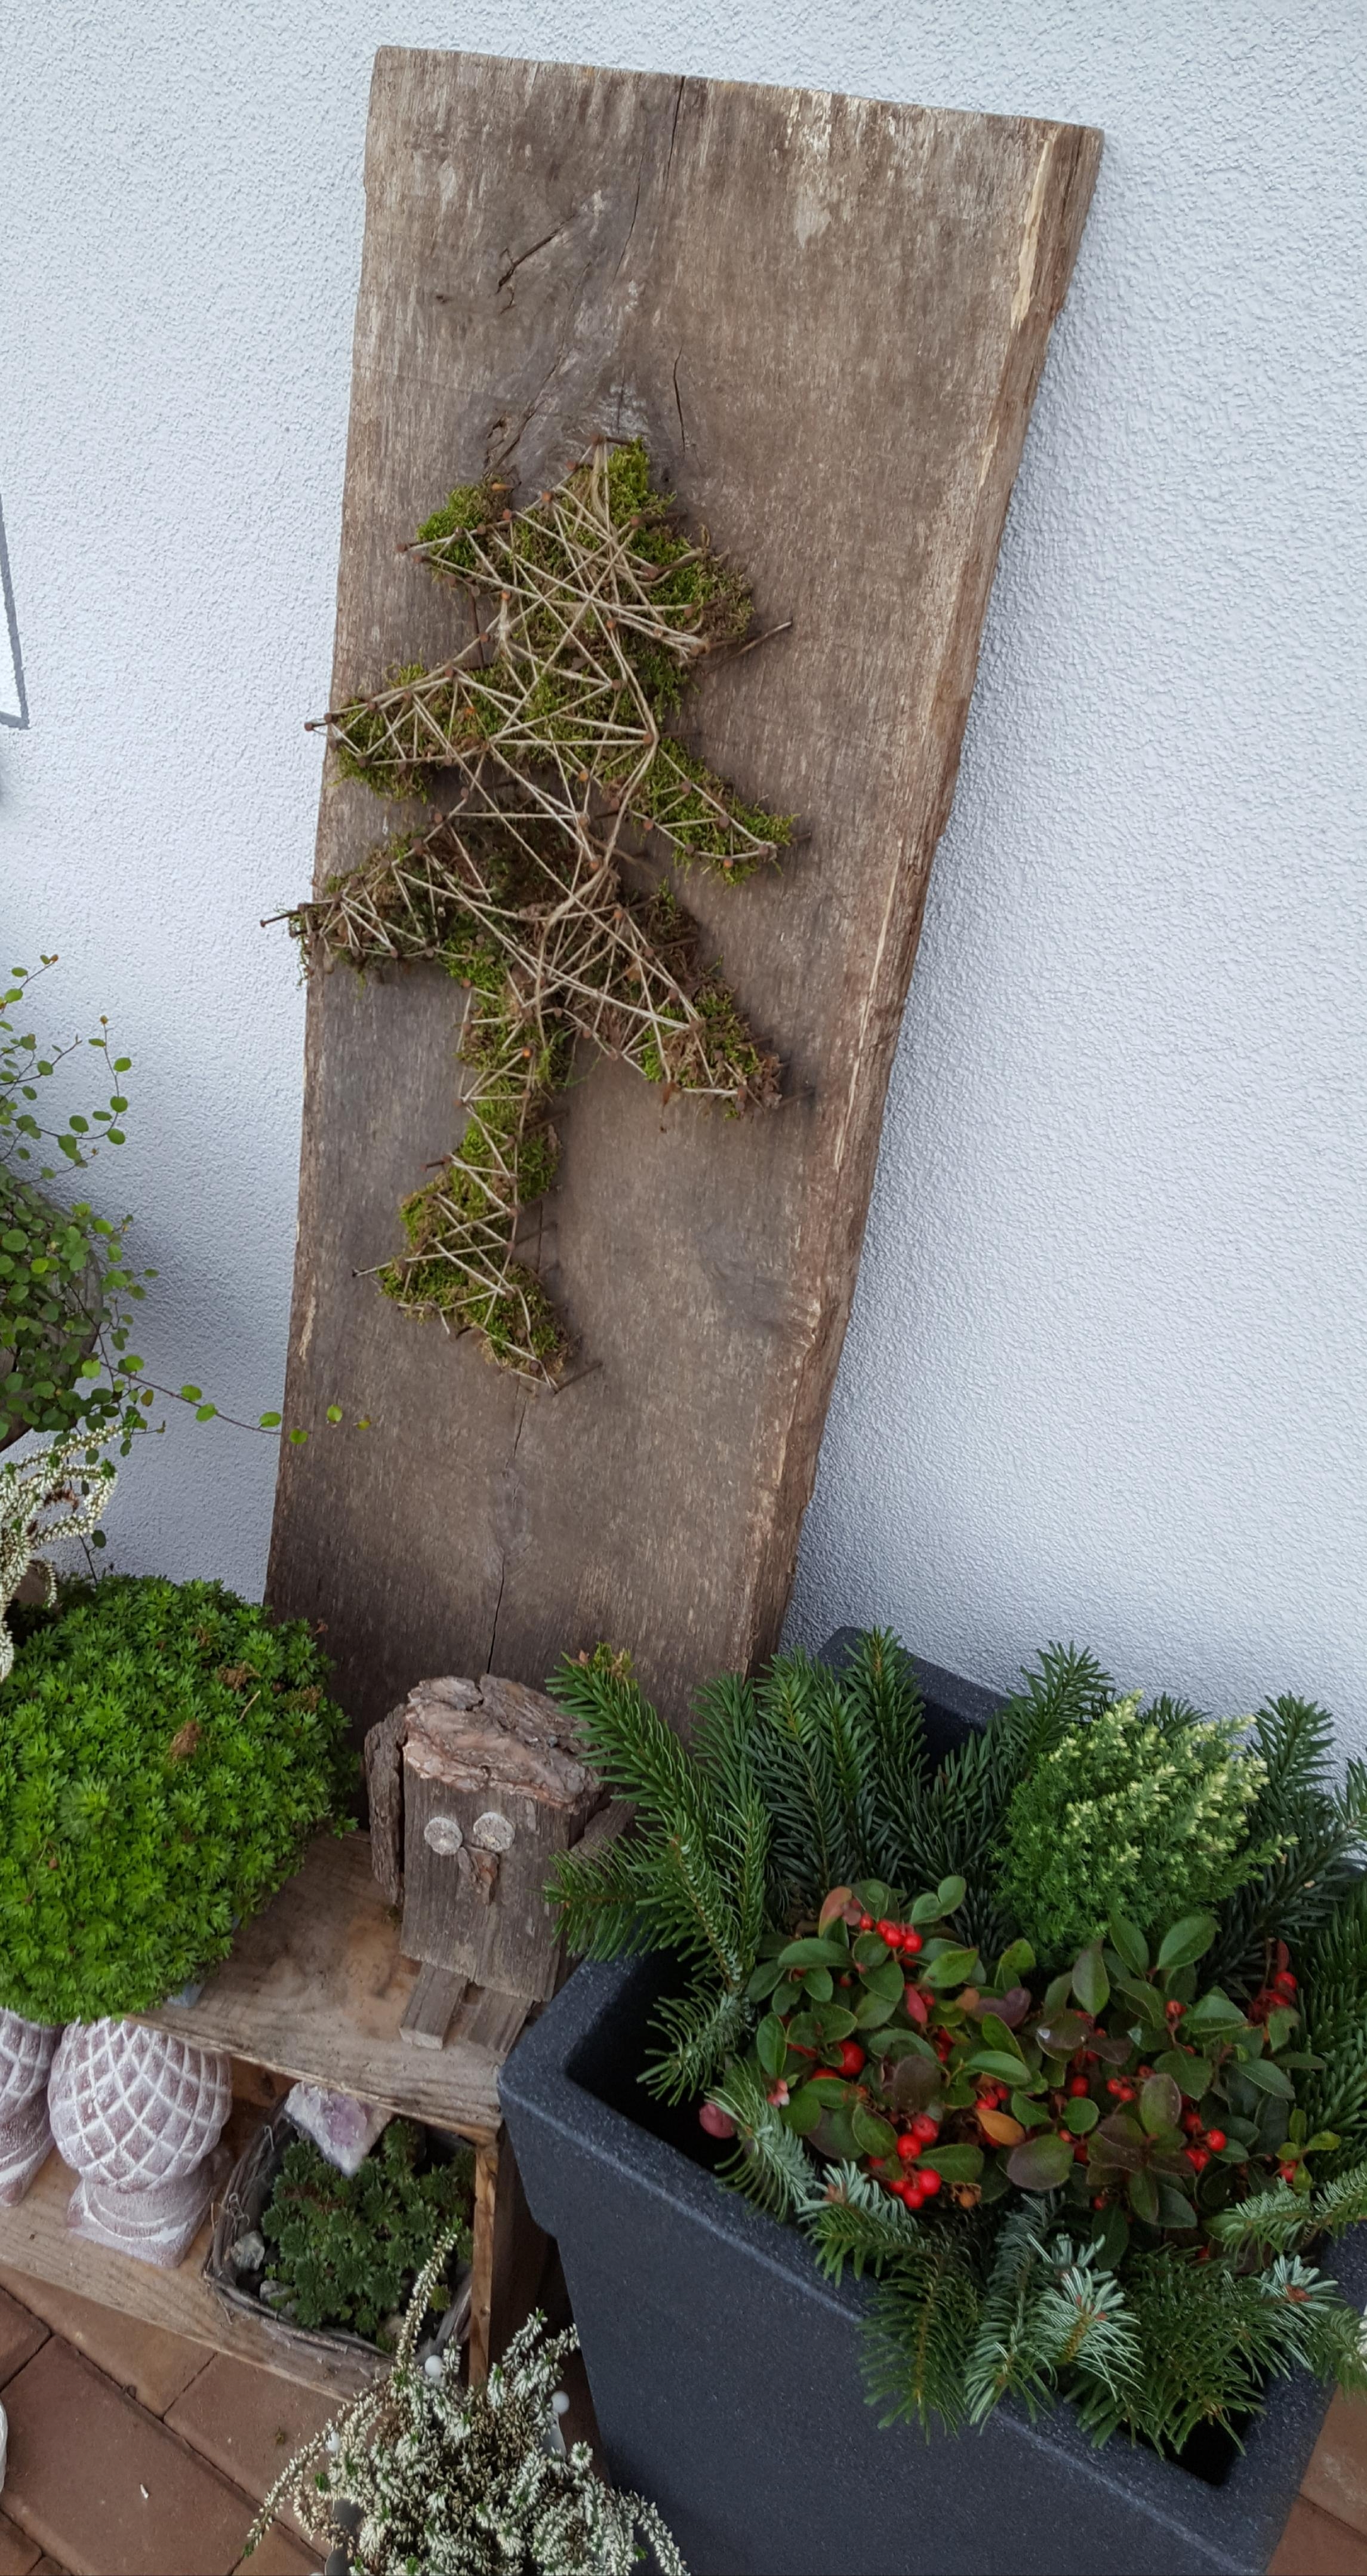 Rustikale Weihnachtsdeko im Garten
#DIY #Deko #Weihnachten #Garten